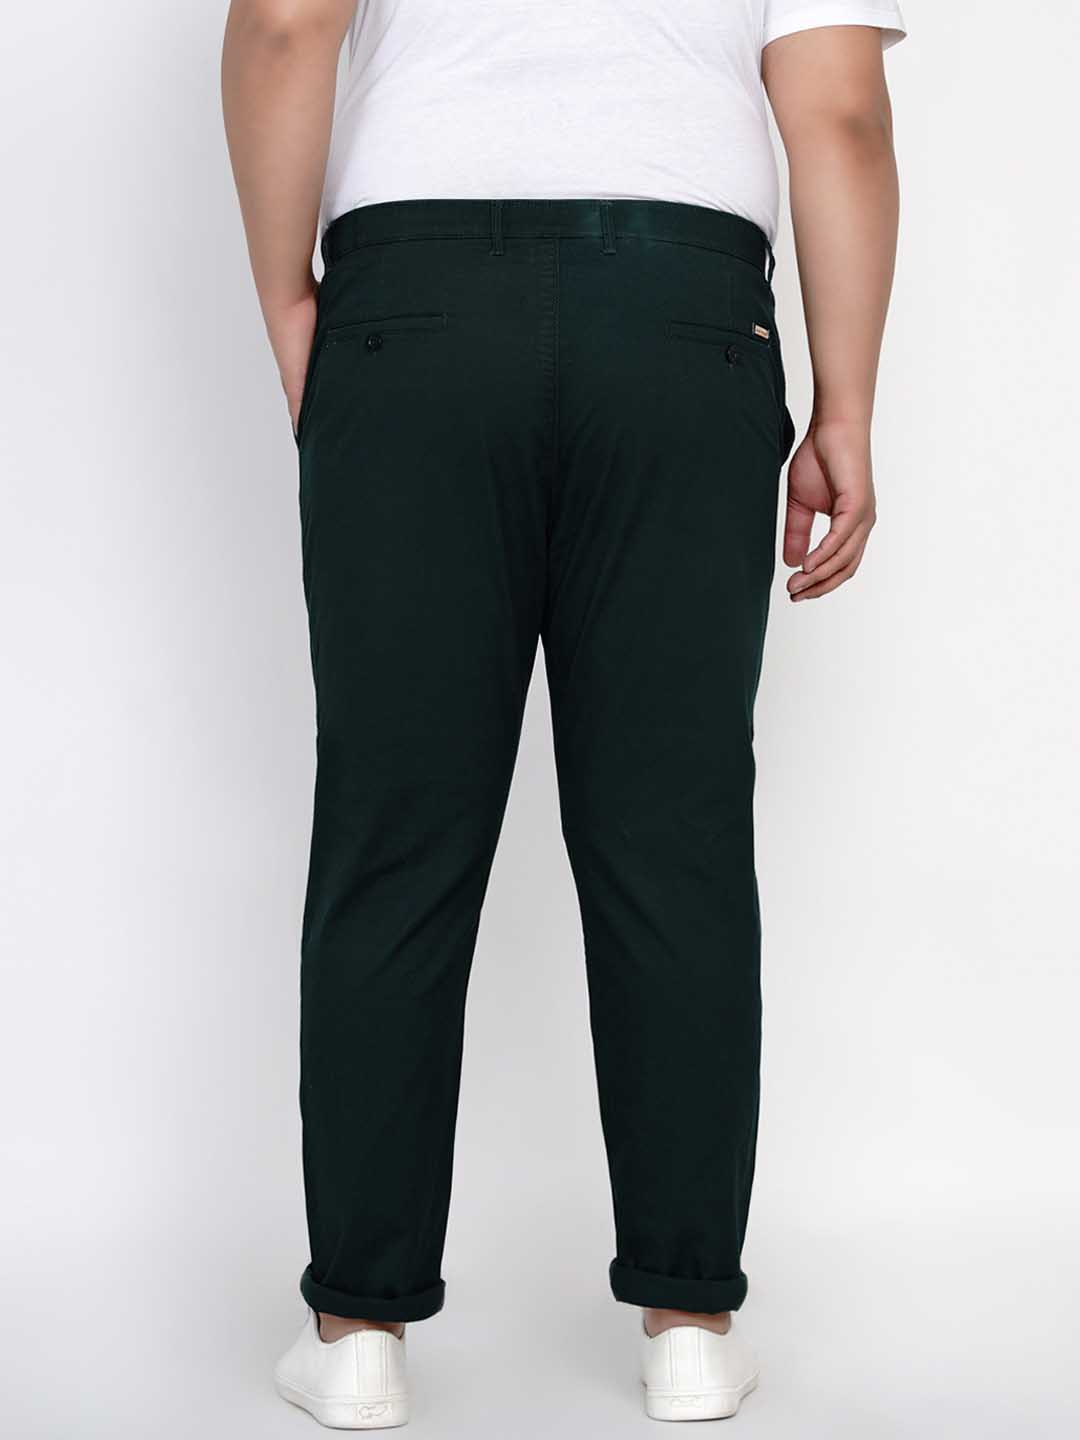 bottomwear/trousers/JPTR2195L/jptr2195l-4.jpg